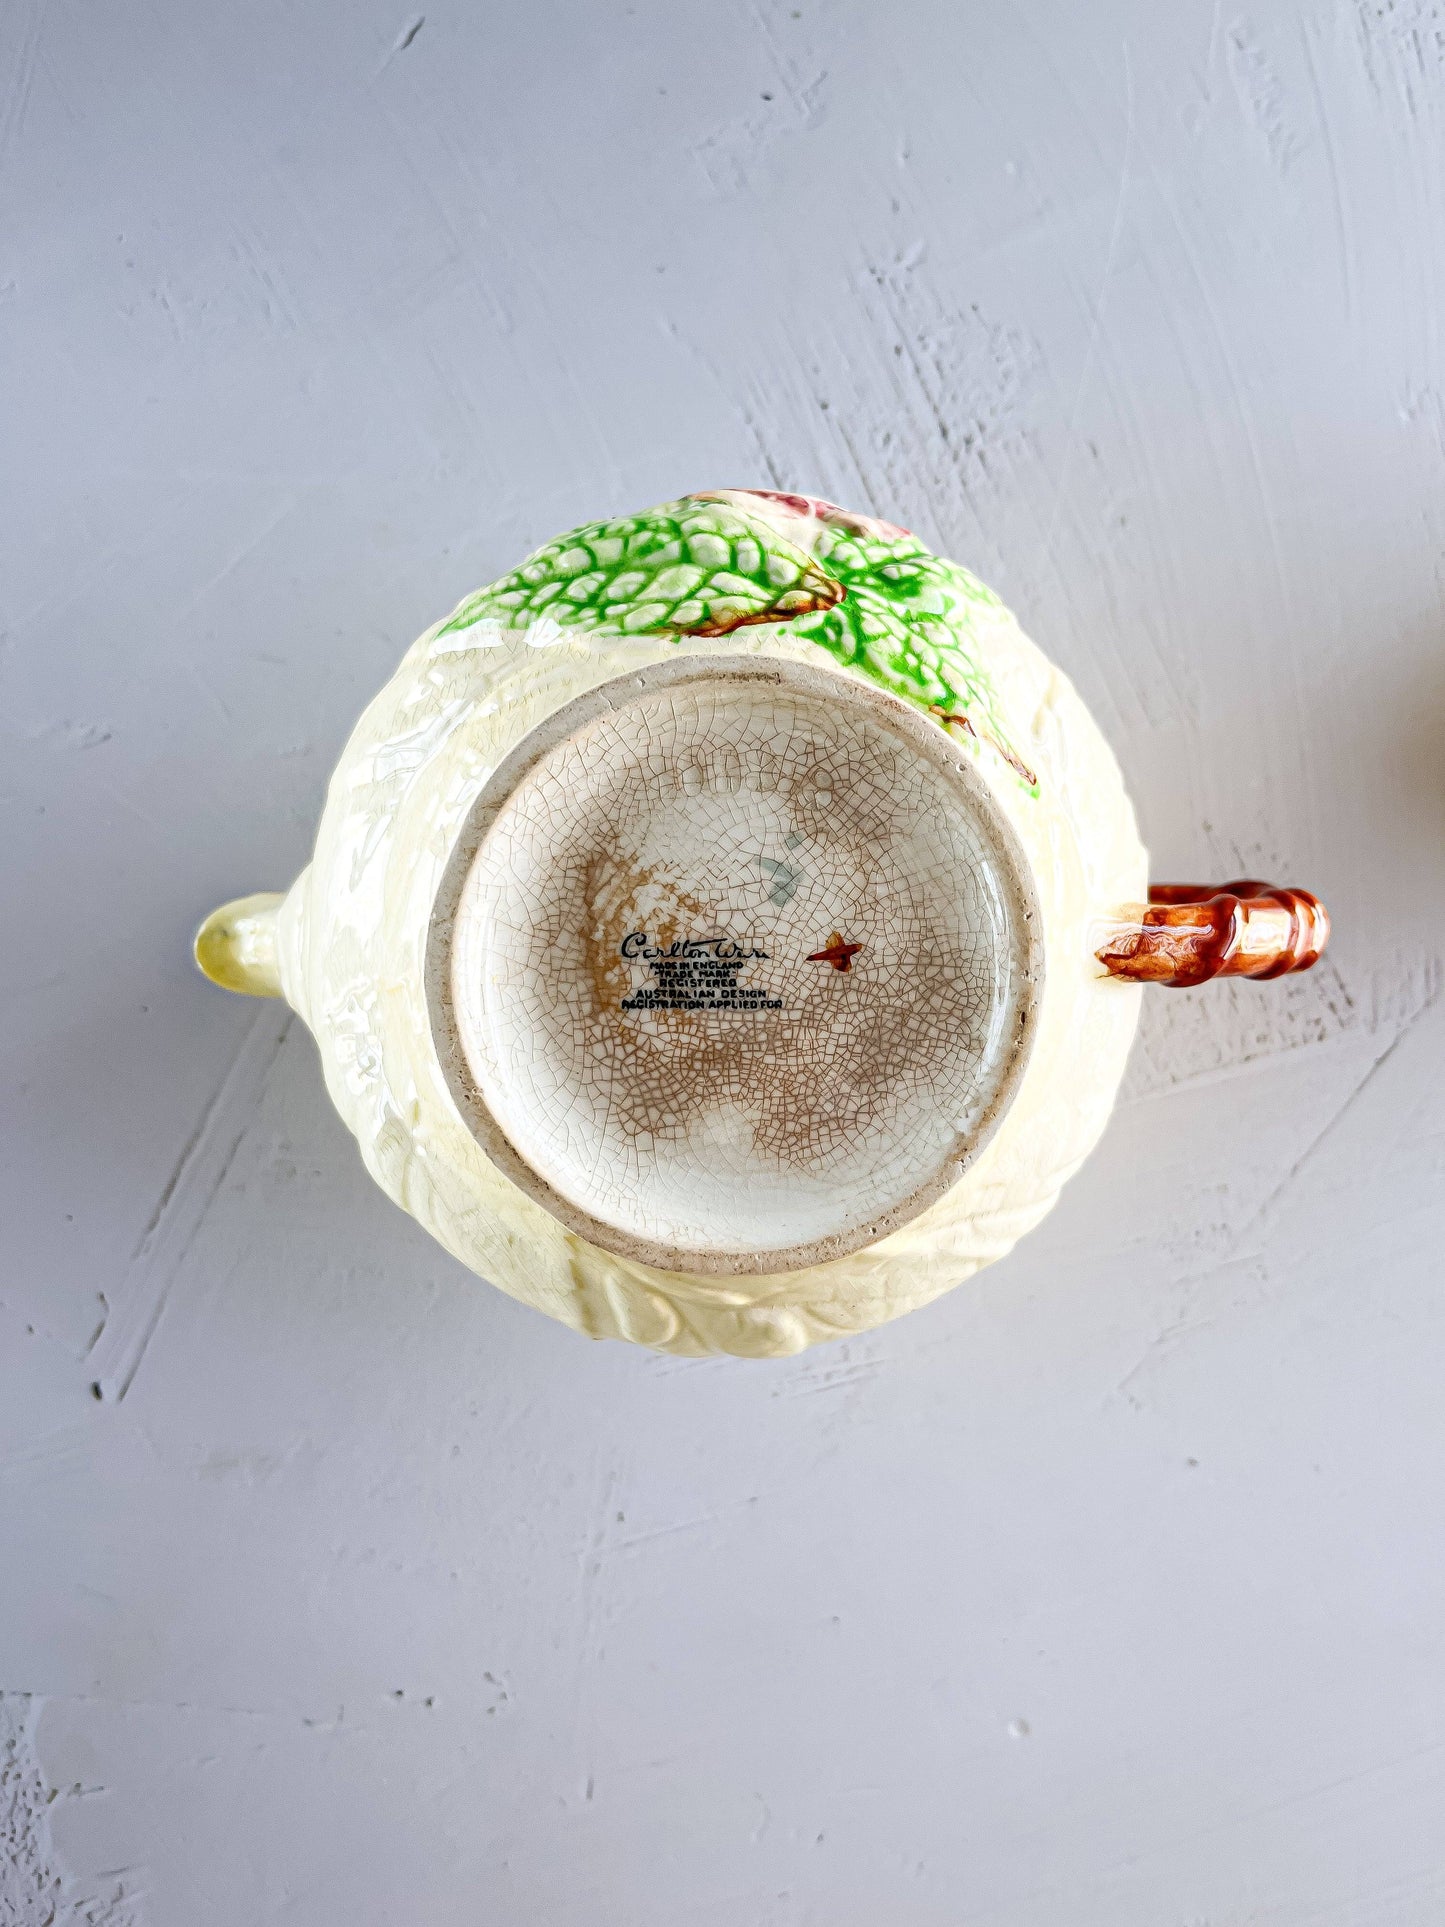 Carlton Ware Teapot - 'Fox Glove' Collection - SOSC Home